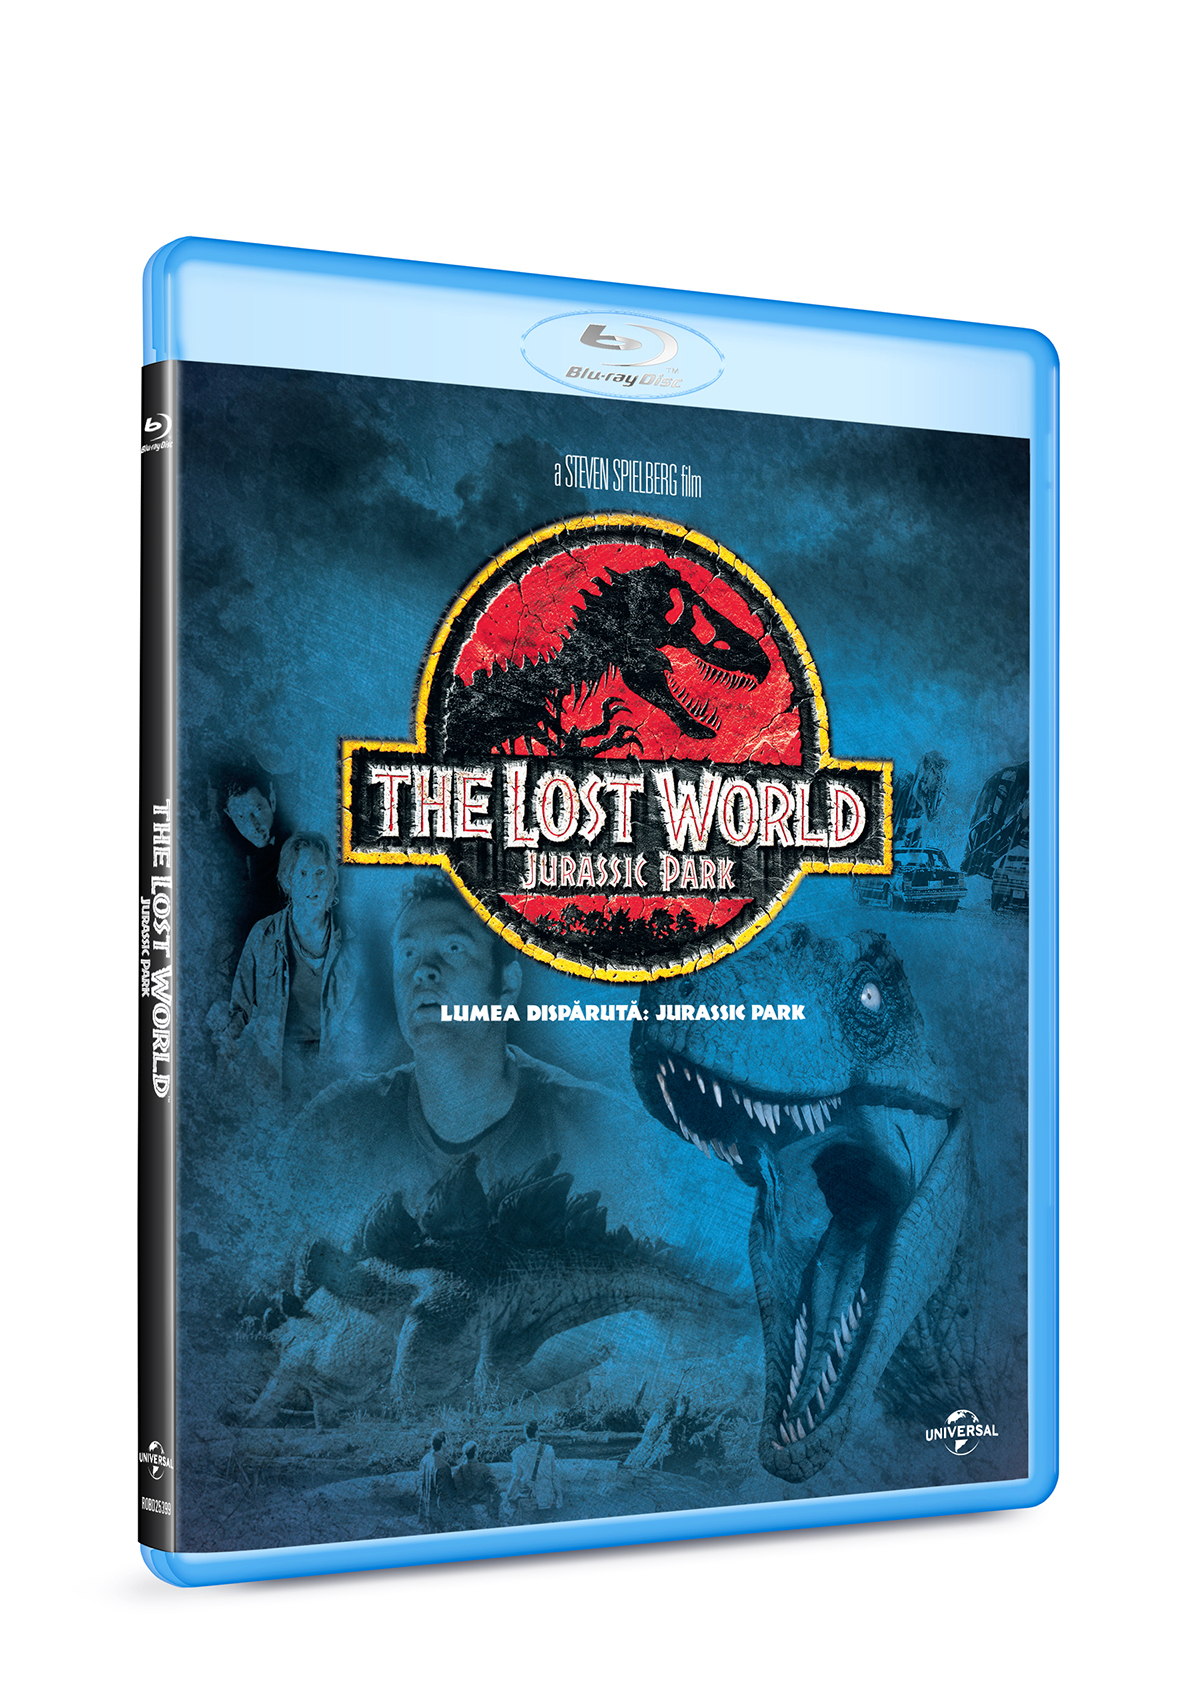 Jurassic Park - Lumea disparuta (Blu Ray Disc) / Jurassic Park - The lost world | Steven Spielberg